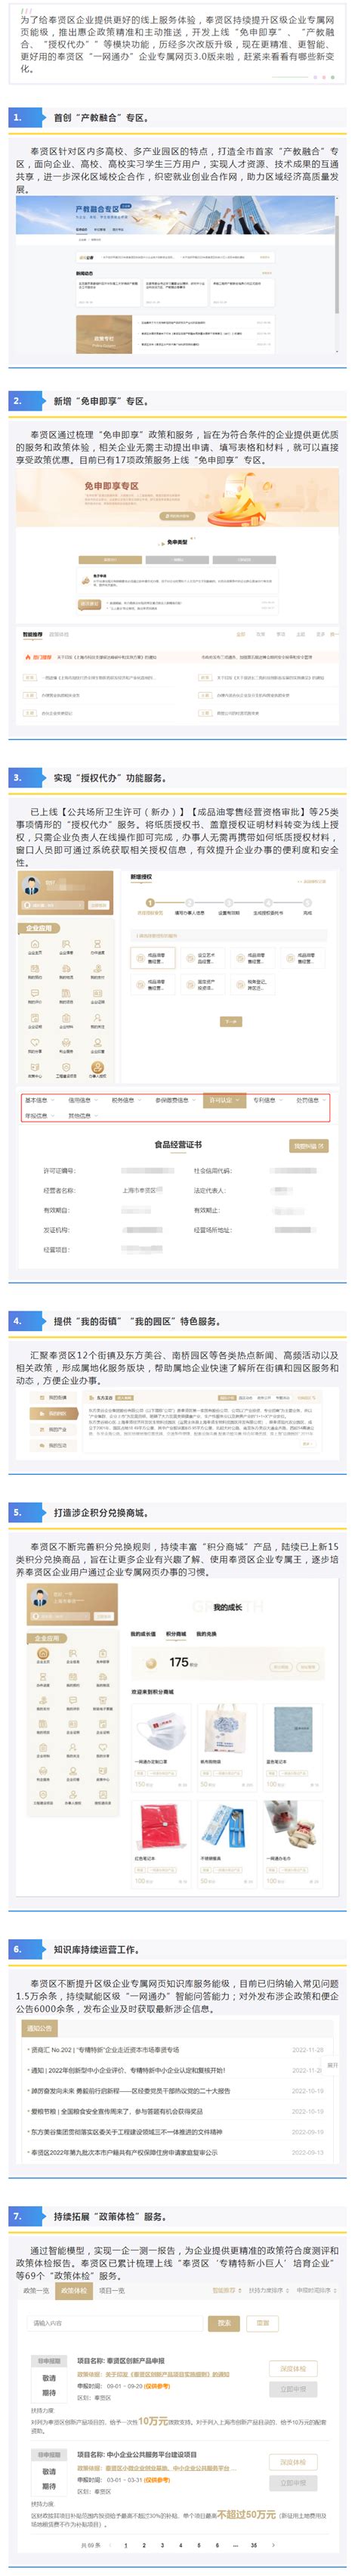 奉贤区综合APP诚信经营「上海伟本信息科技供应」 - 8684网企业资讯